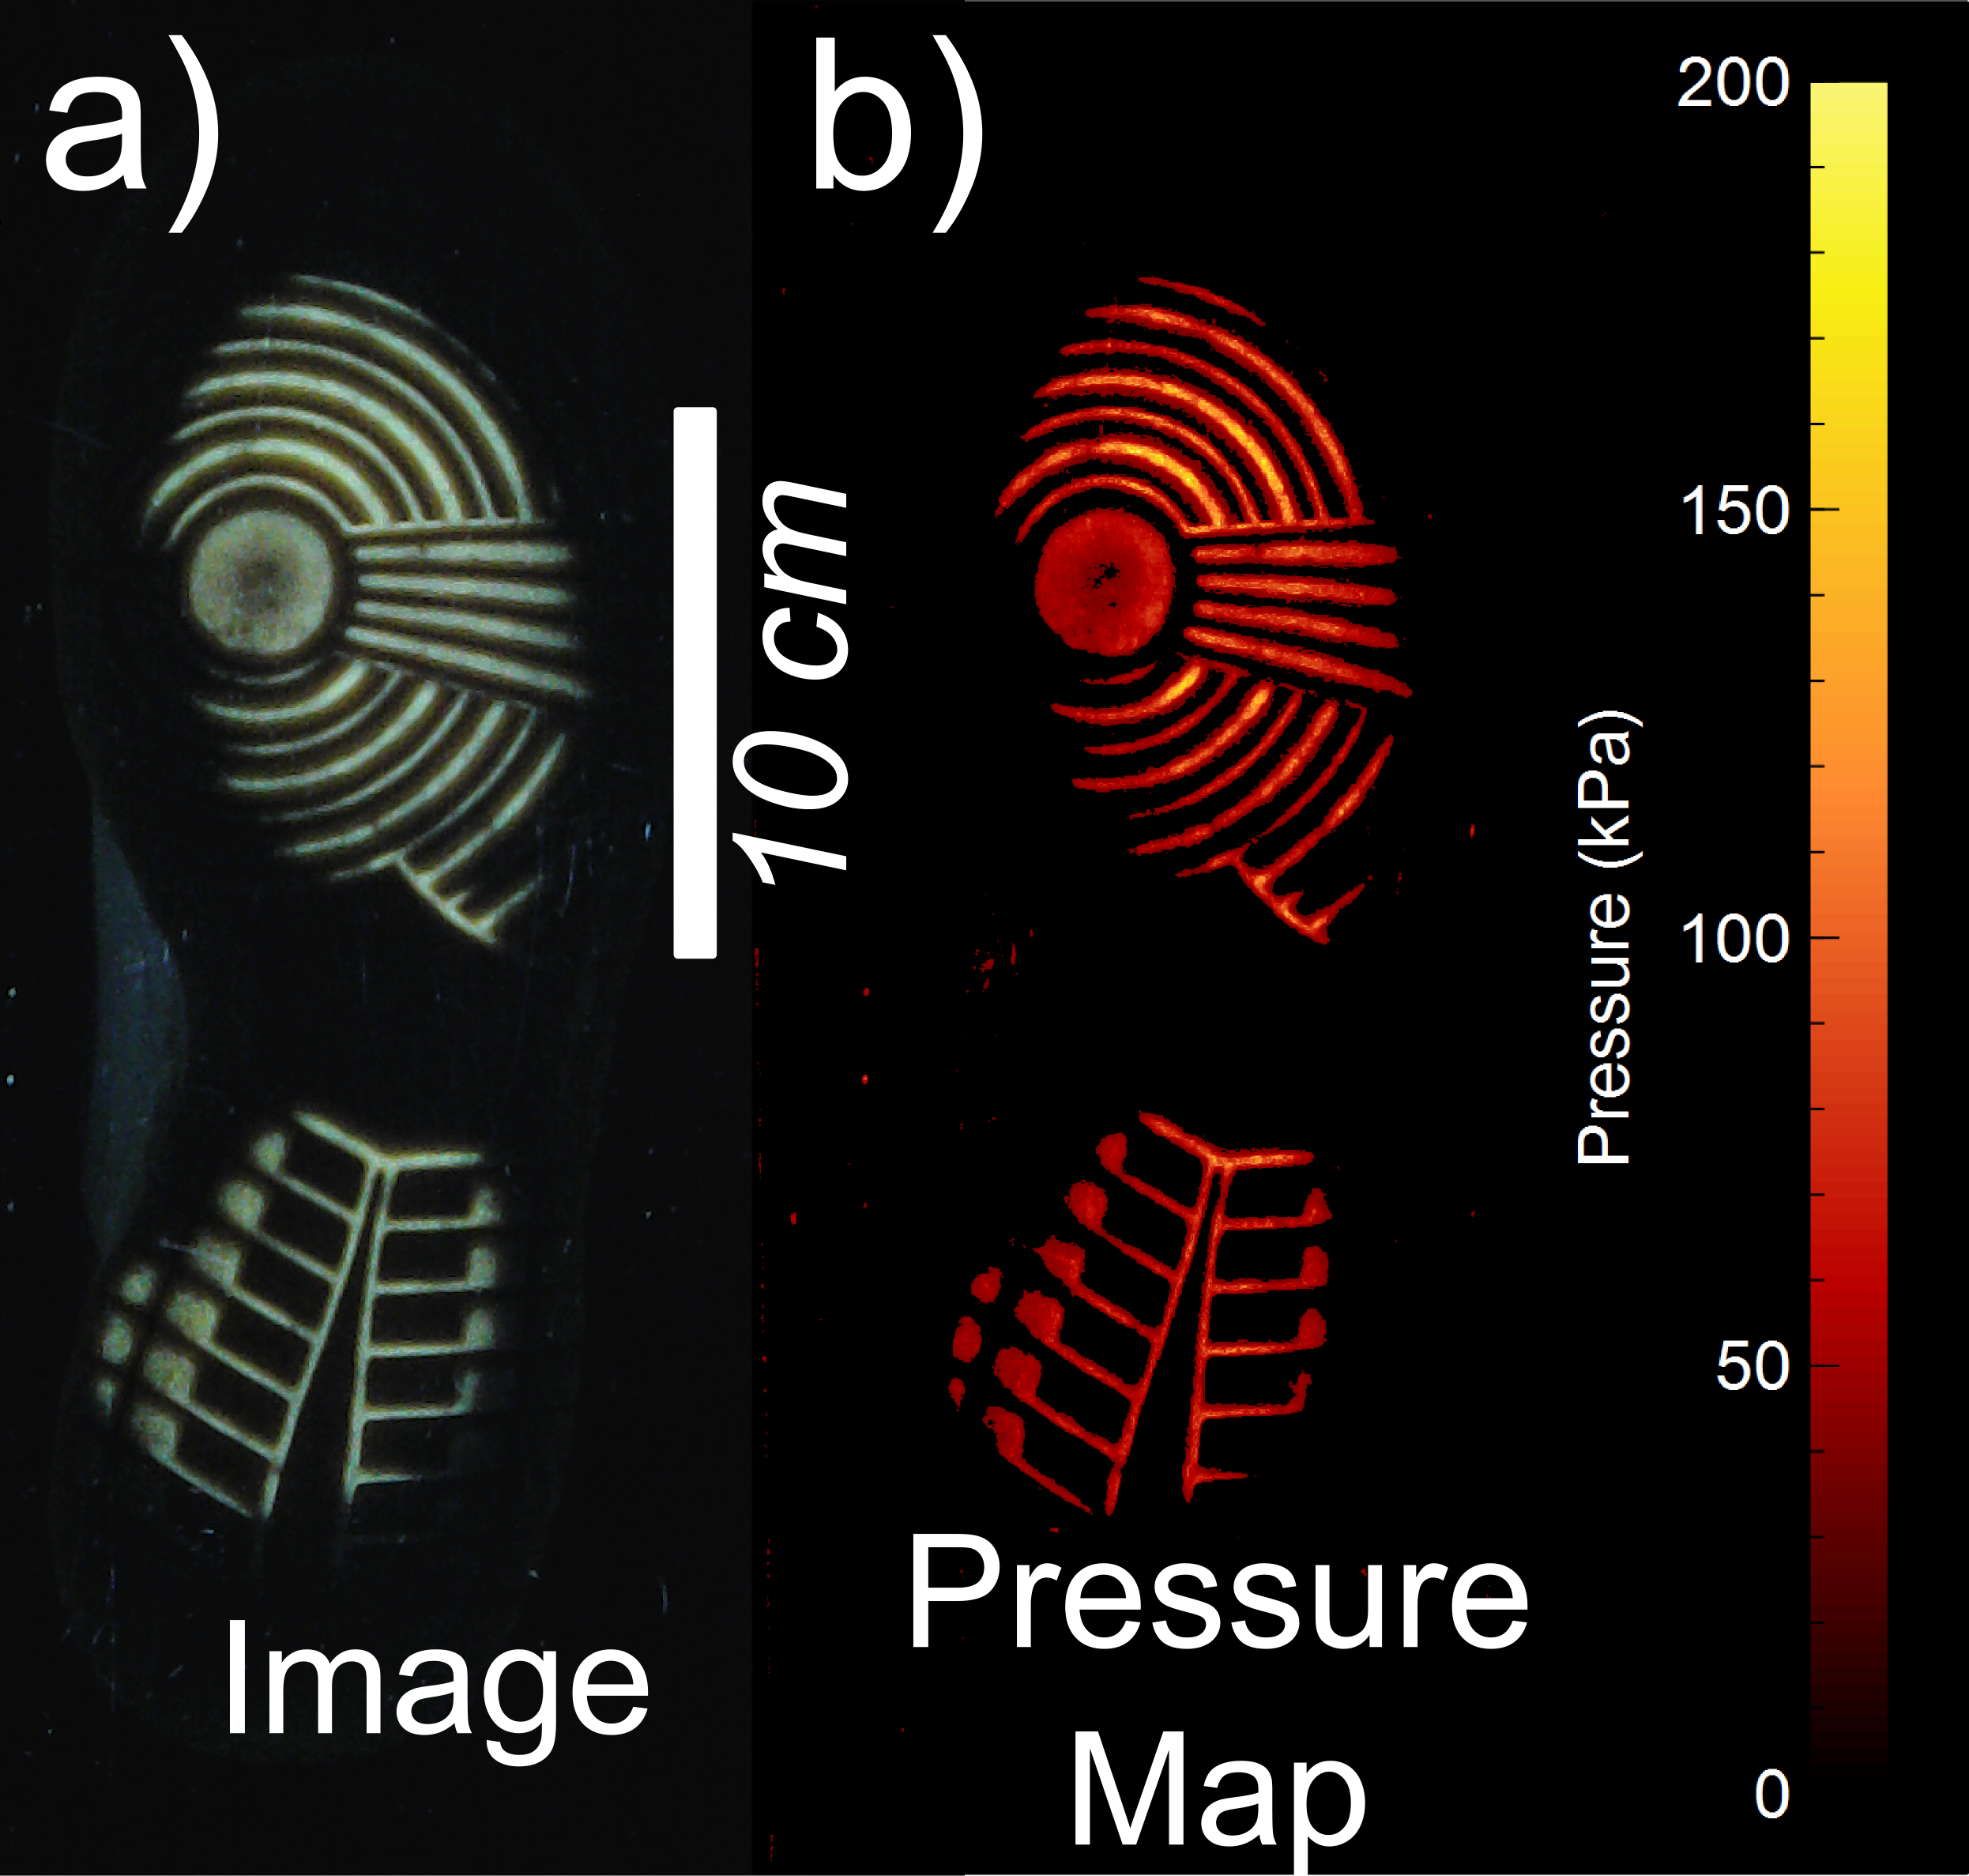 Digital ‘fingerprints’ of shoe patterns.